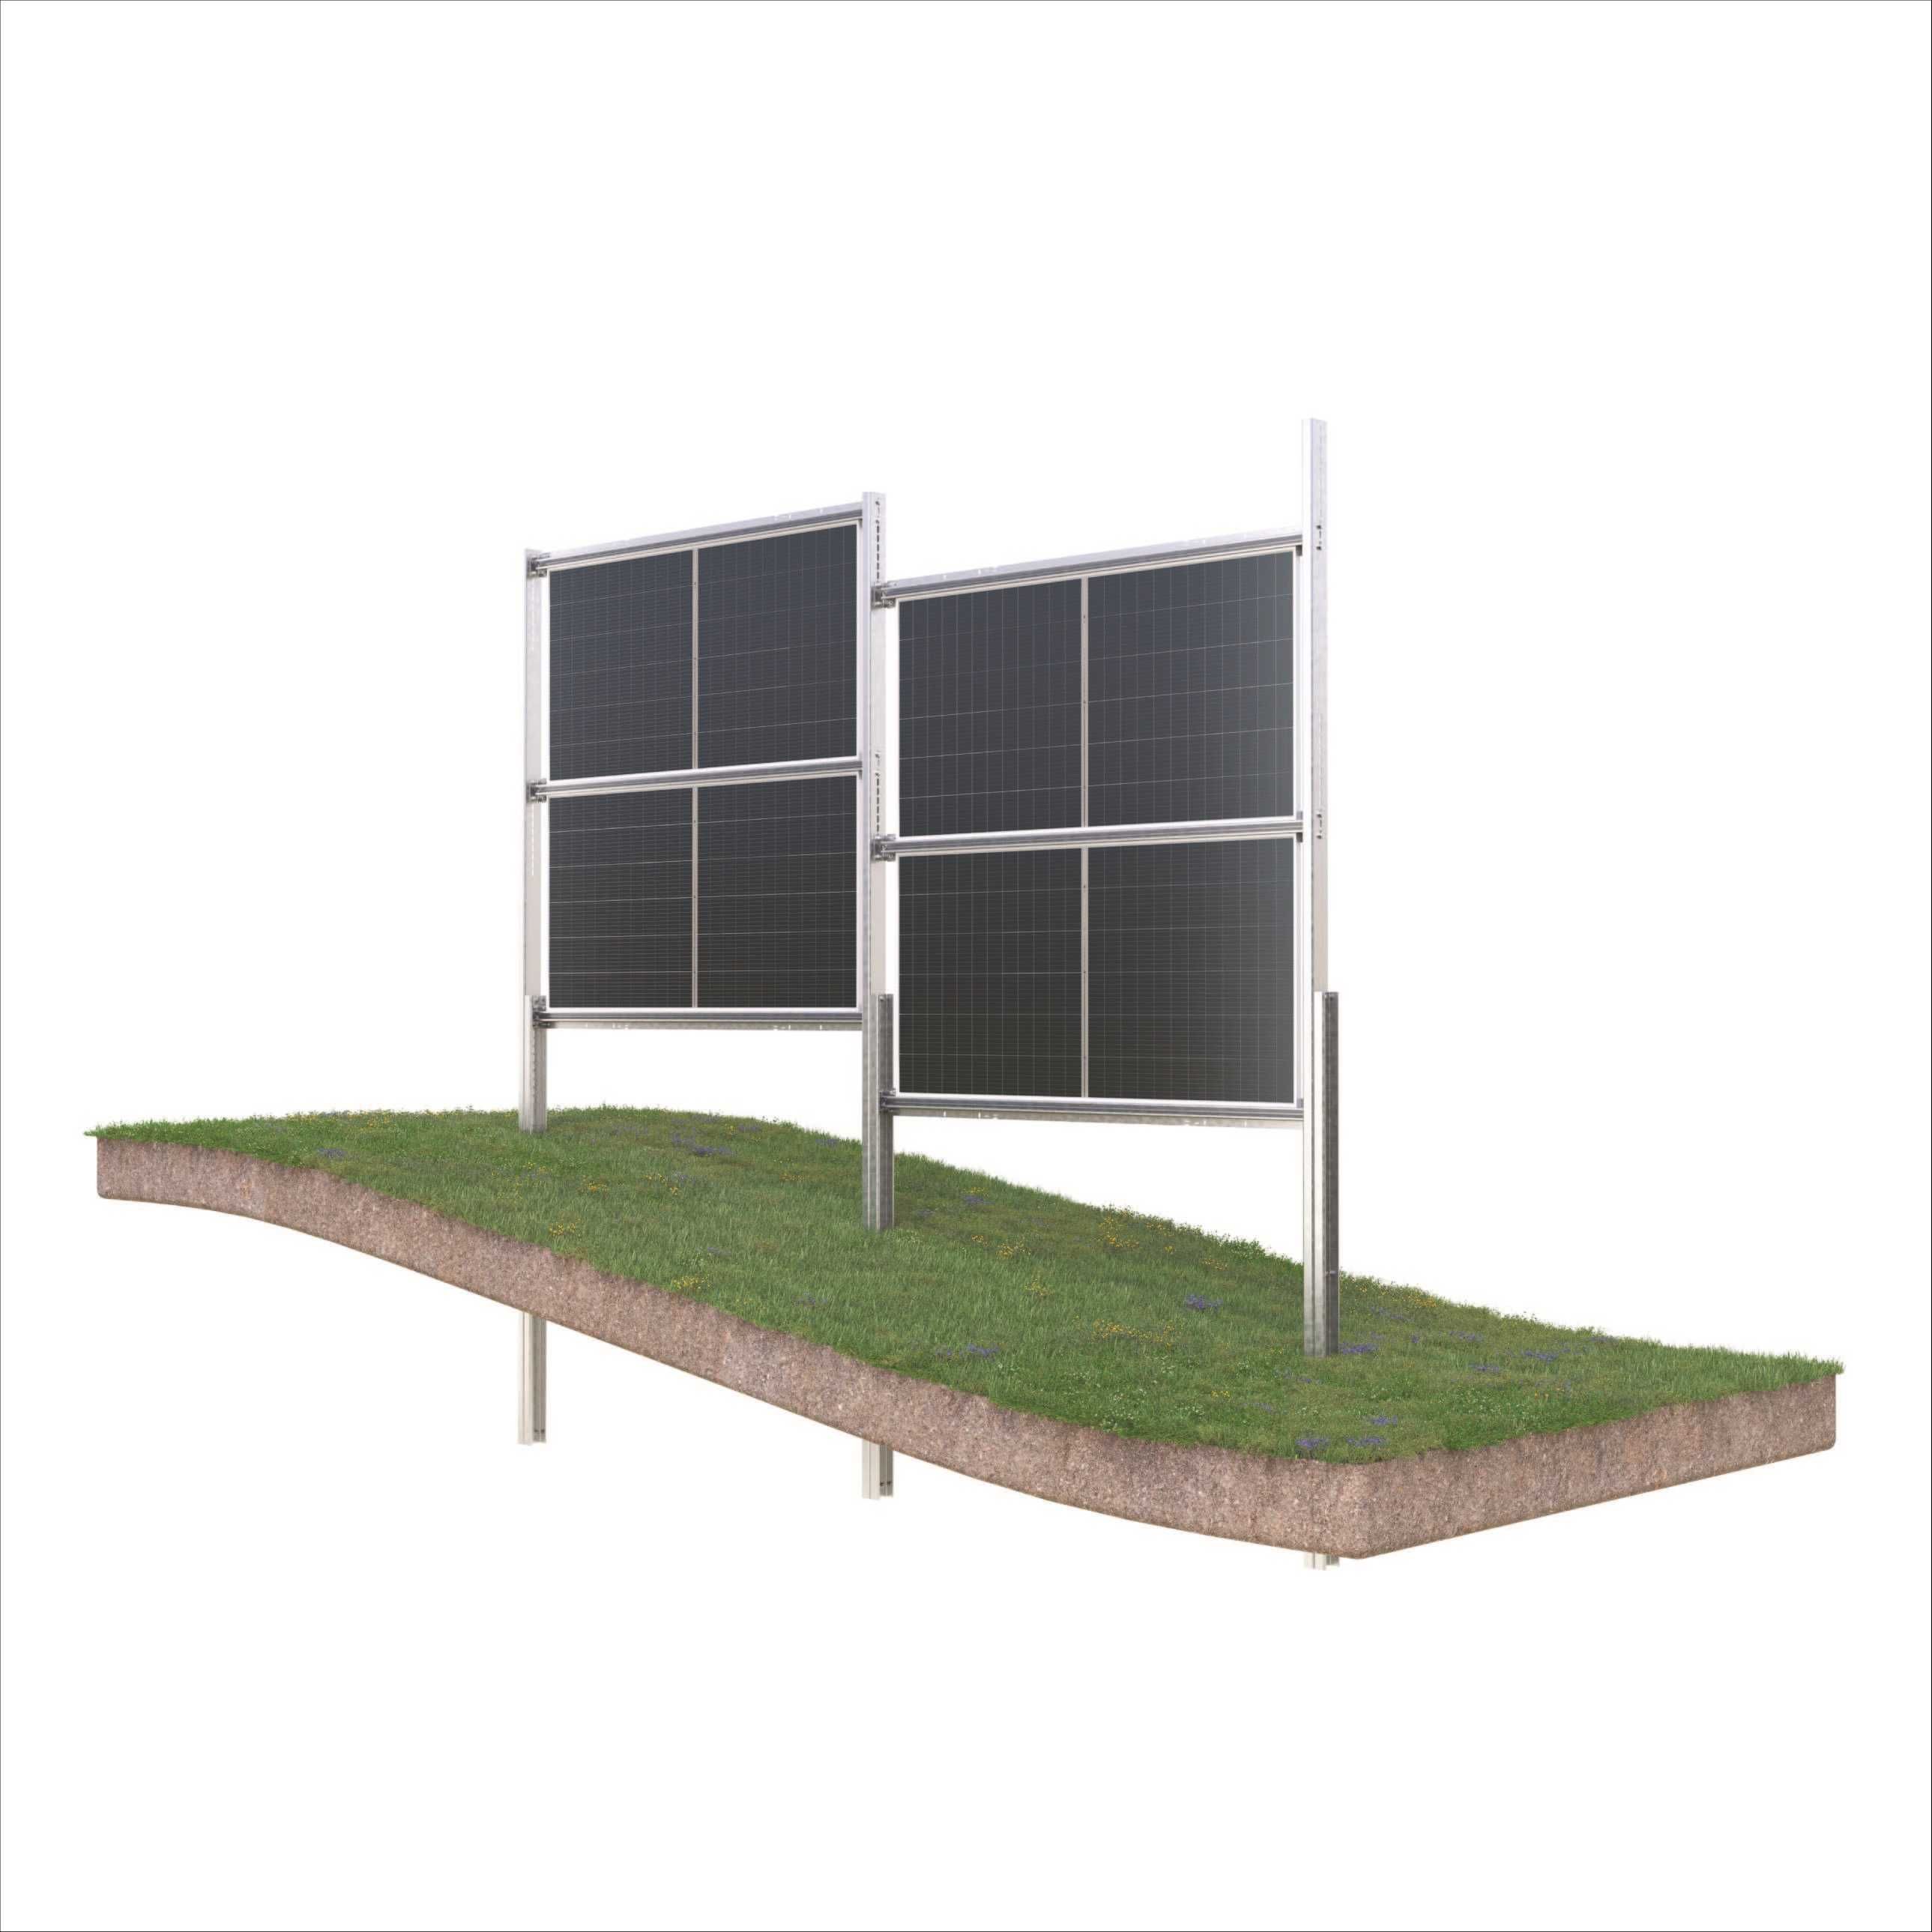 Ogrodzenie z paneli fotowoltaicznych bifacial 9,6kW (ok. 50 metrów)